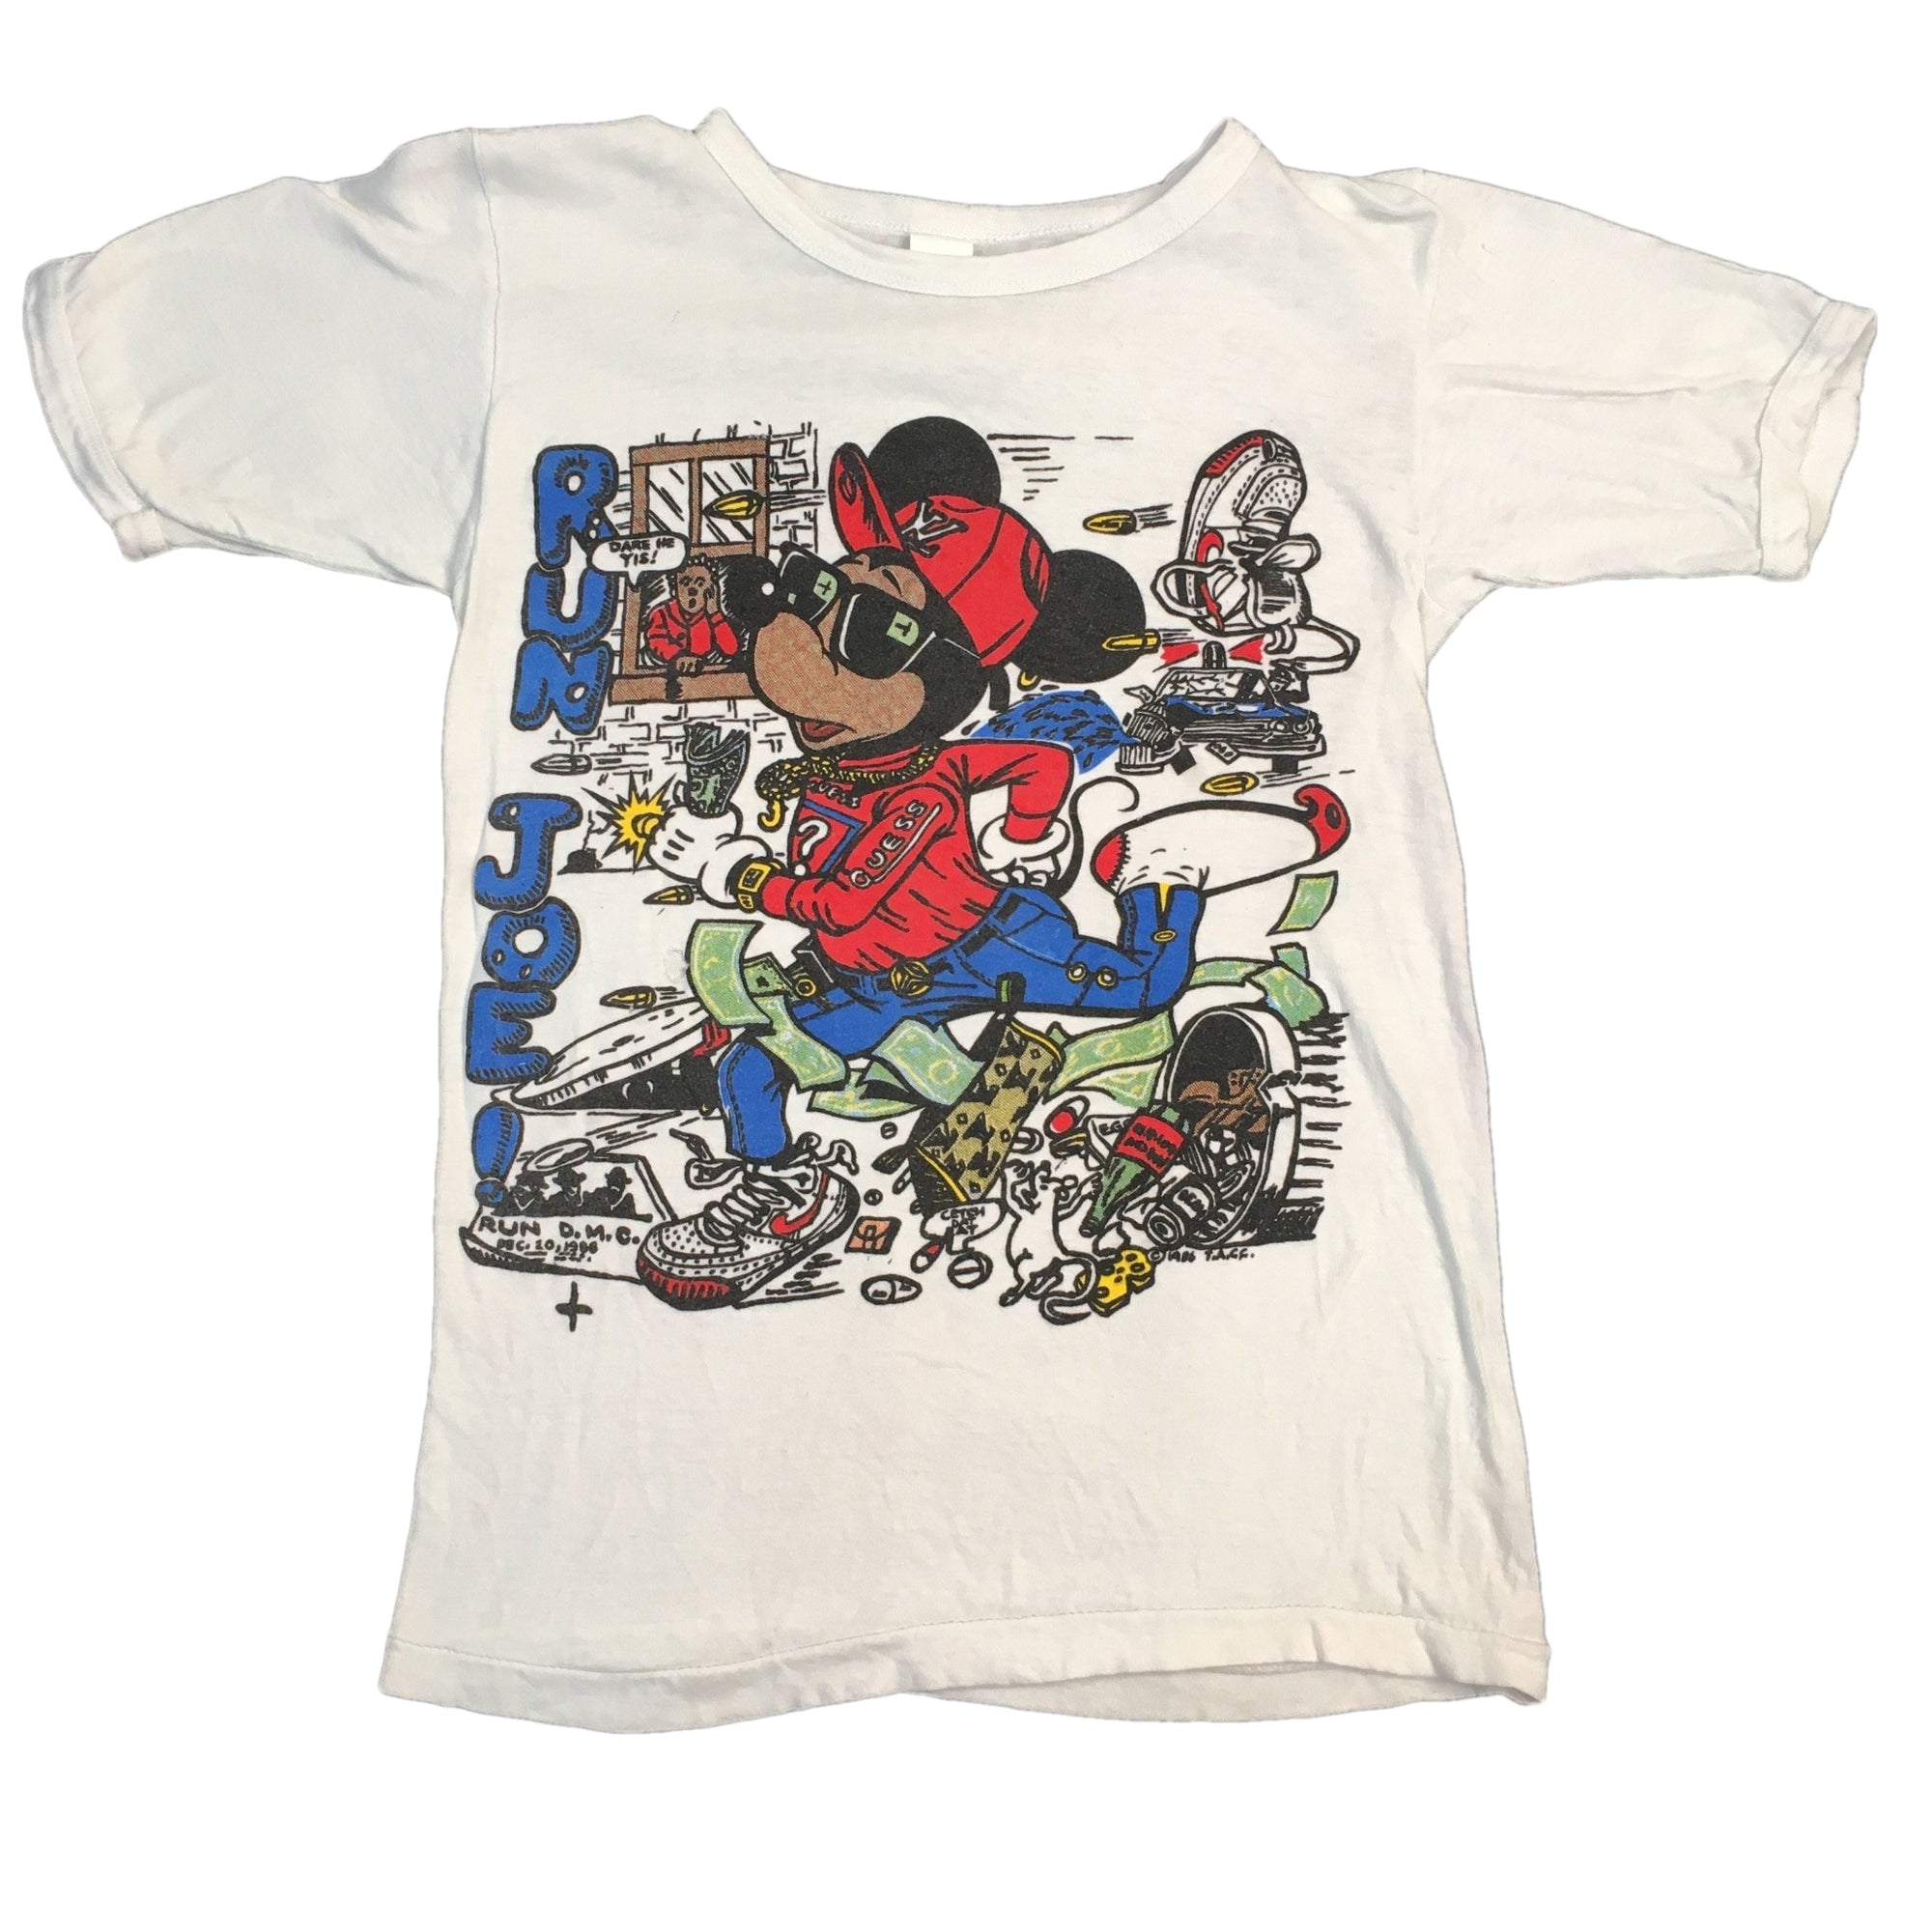 Vintage Mickey Mouse "Run Joe!" Bootleg T-Shirt - jointcustodydc